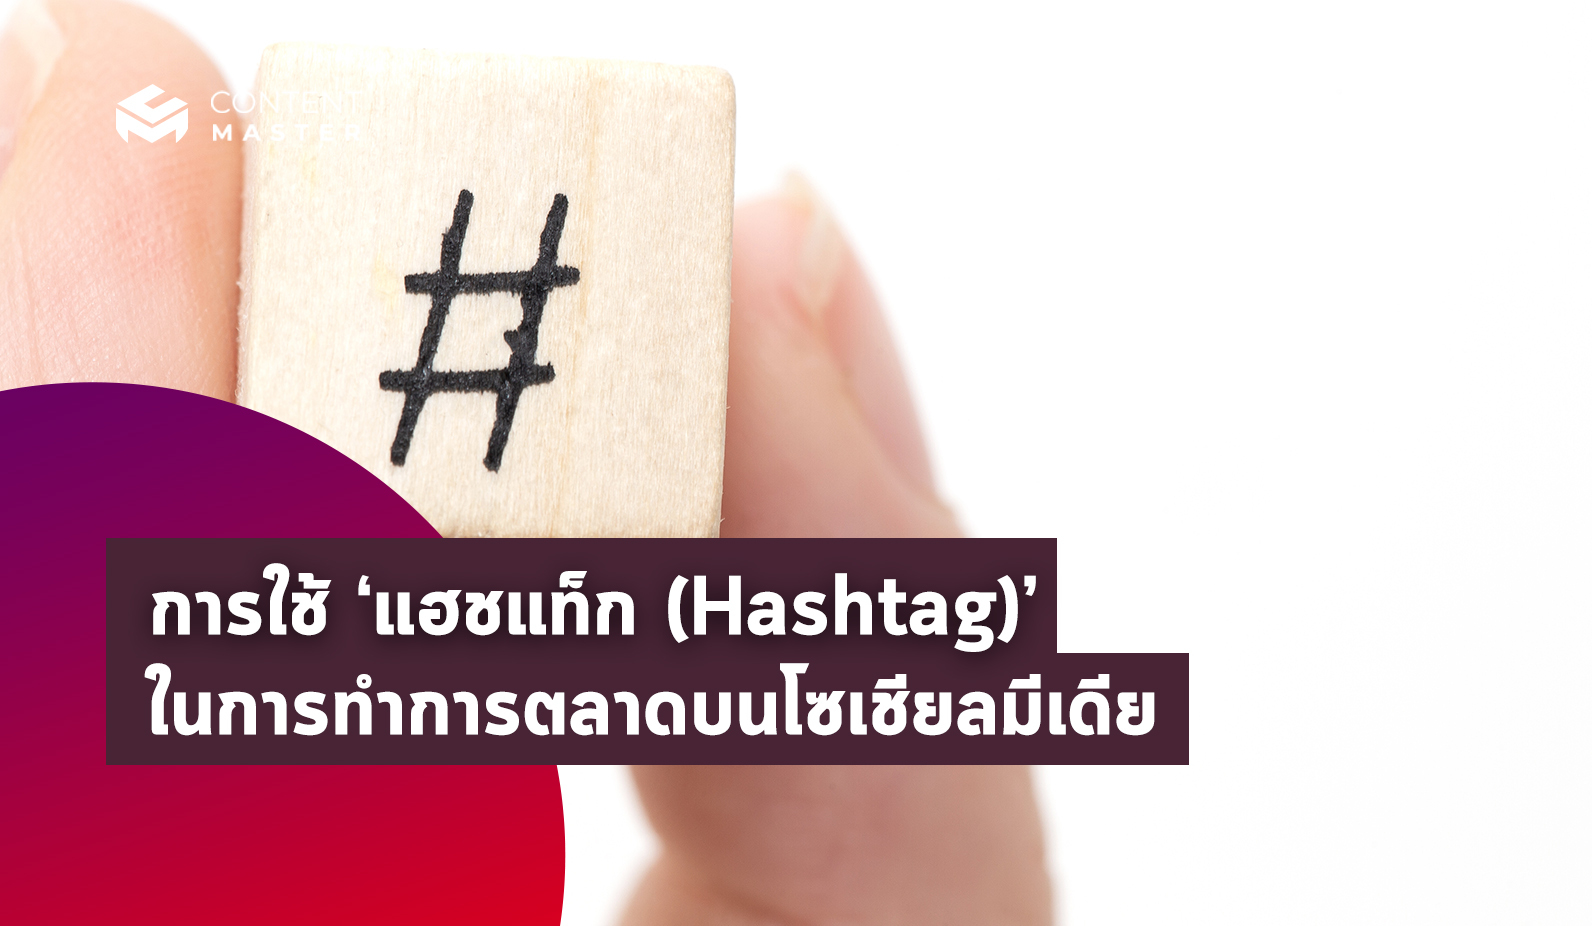 การใช้ ‘แฮชแท็ก (Hashtag)’ ในการทำการตลาดบนโซเชียลมีเดีย